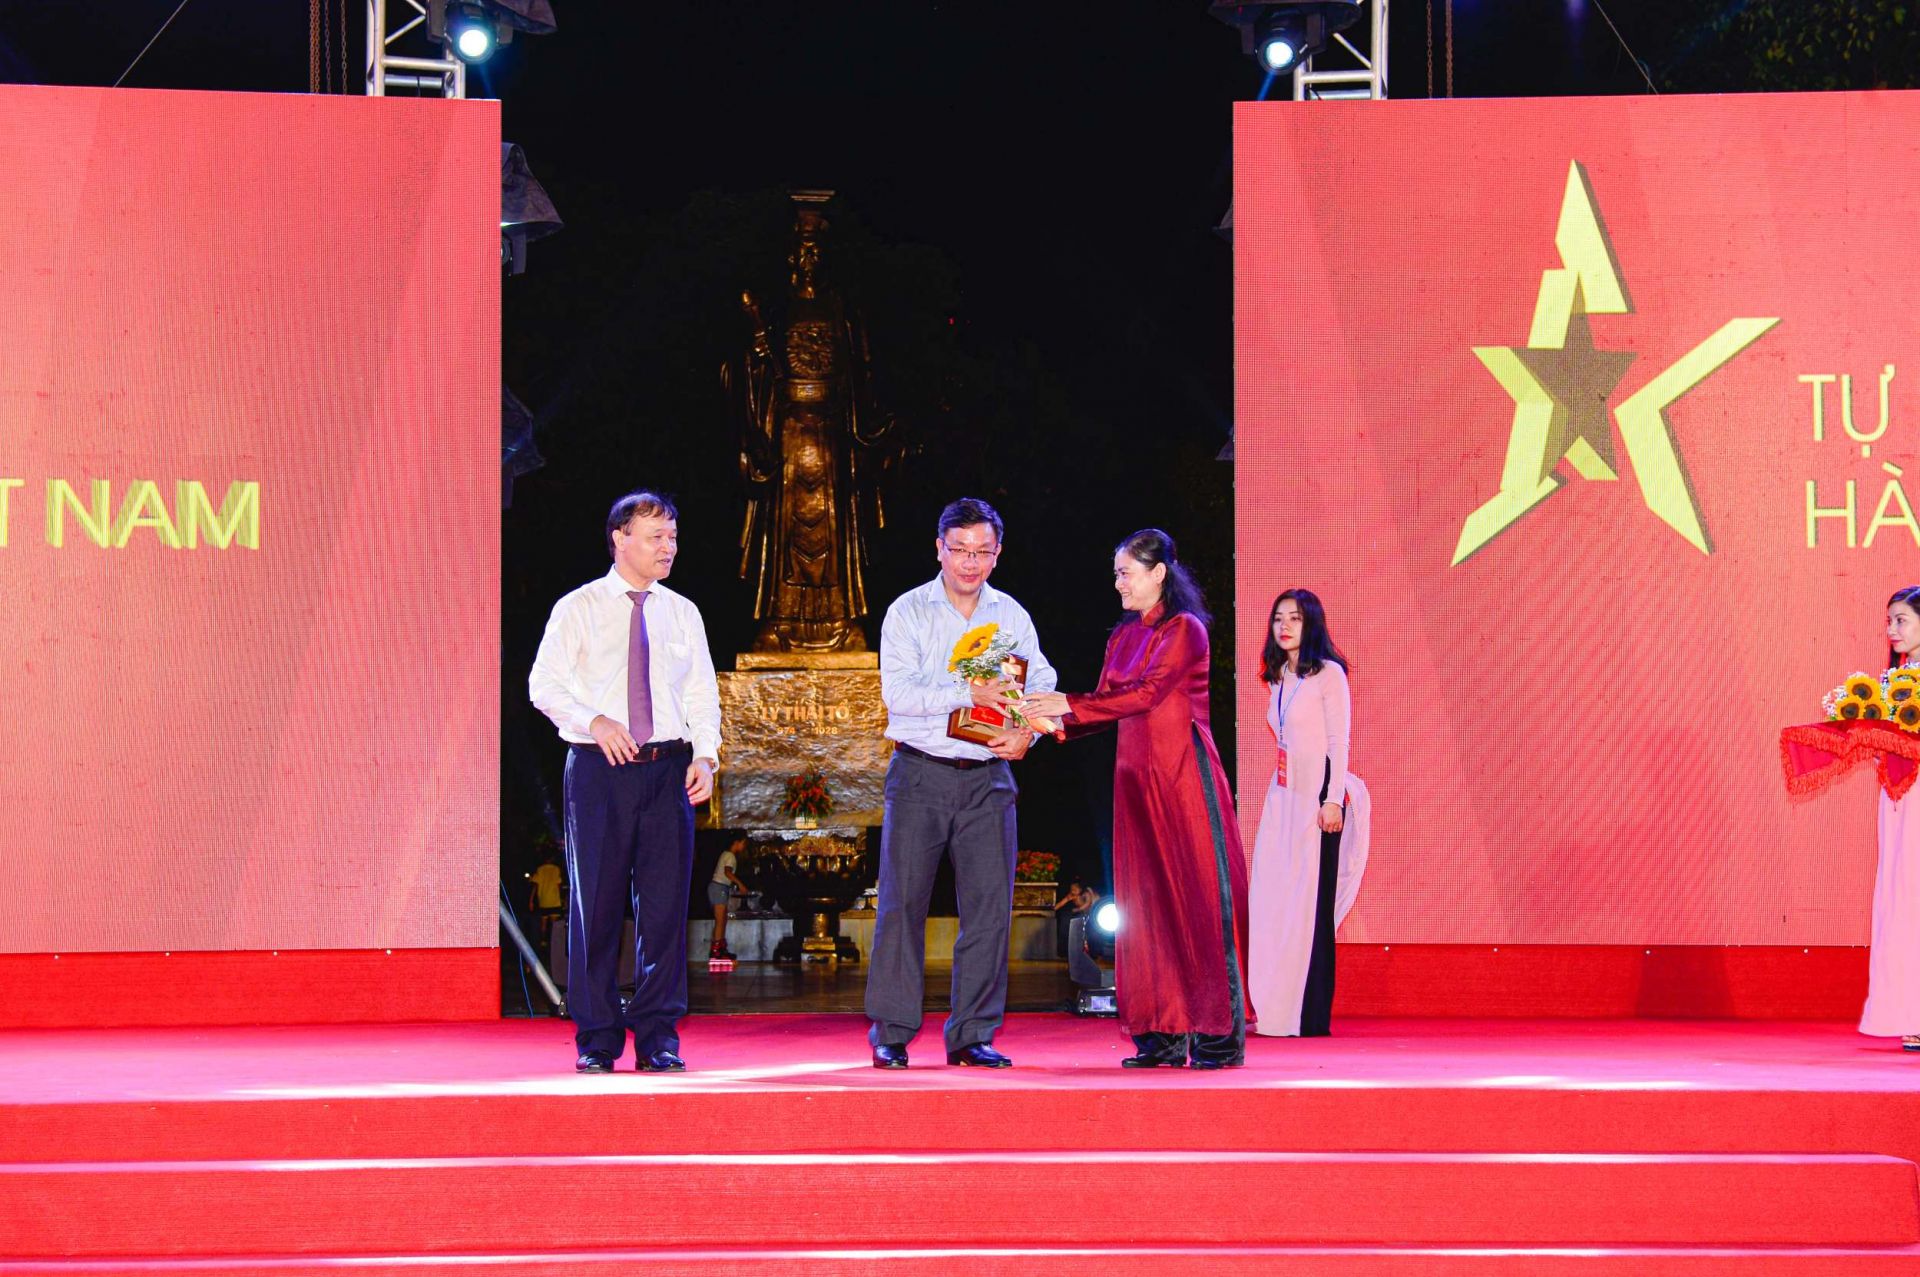 Thứ trưởng Bộ Công Thương Đỗ Thắng Hải (trái) và Phó Chủ tịch Hội Liên hiệp Phụ nữ Việt Nam Đỗ Thị Thu Thảo (phải) trao kỷ niệm chương cho đại diện Sở Công Thương Lâm Đồng